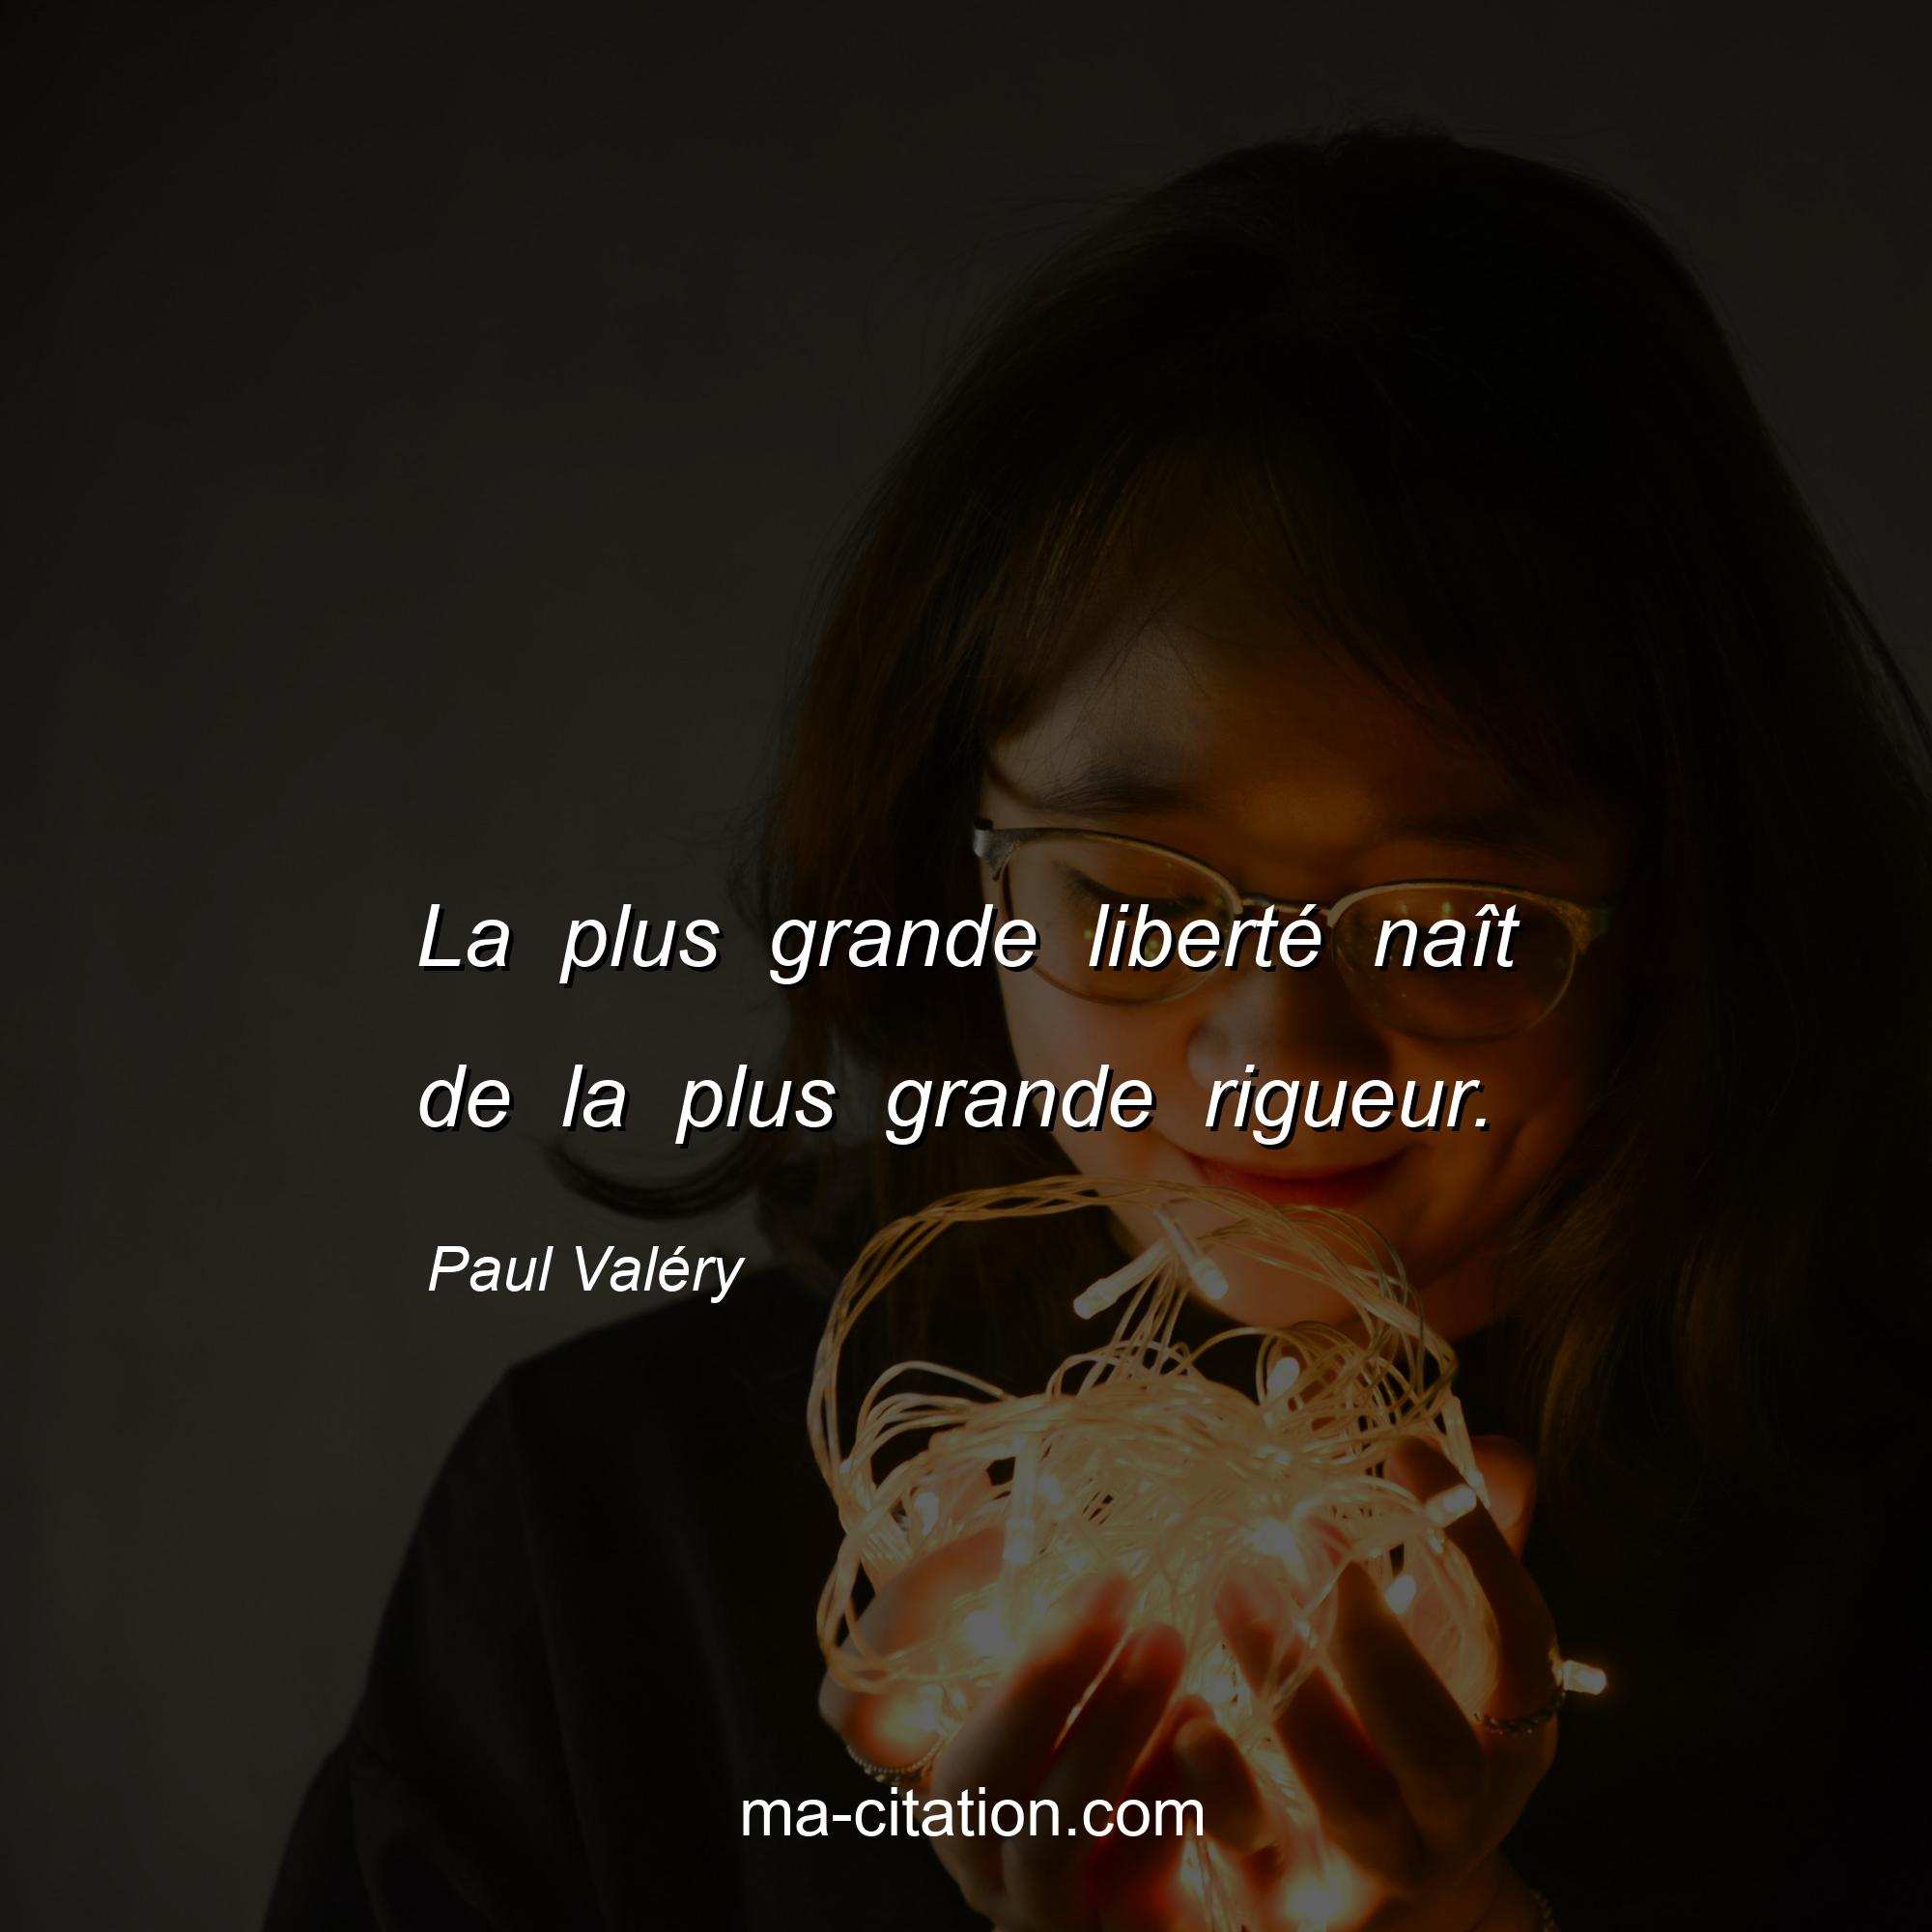 Paul Valéry : La plus grande liberté naît de la plus grande rigueur.